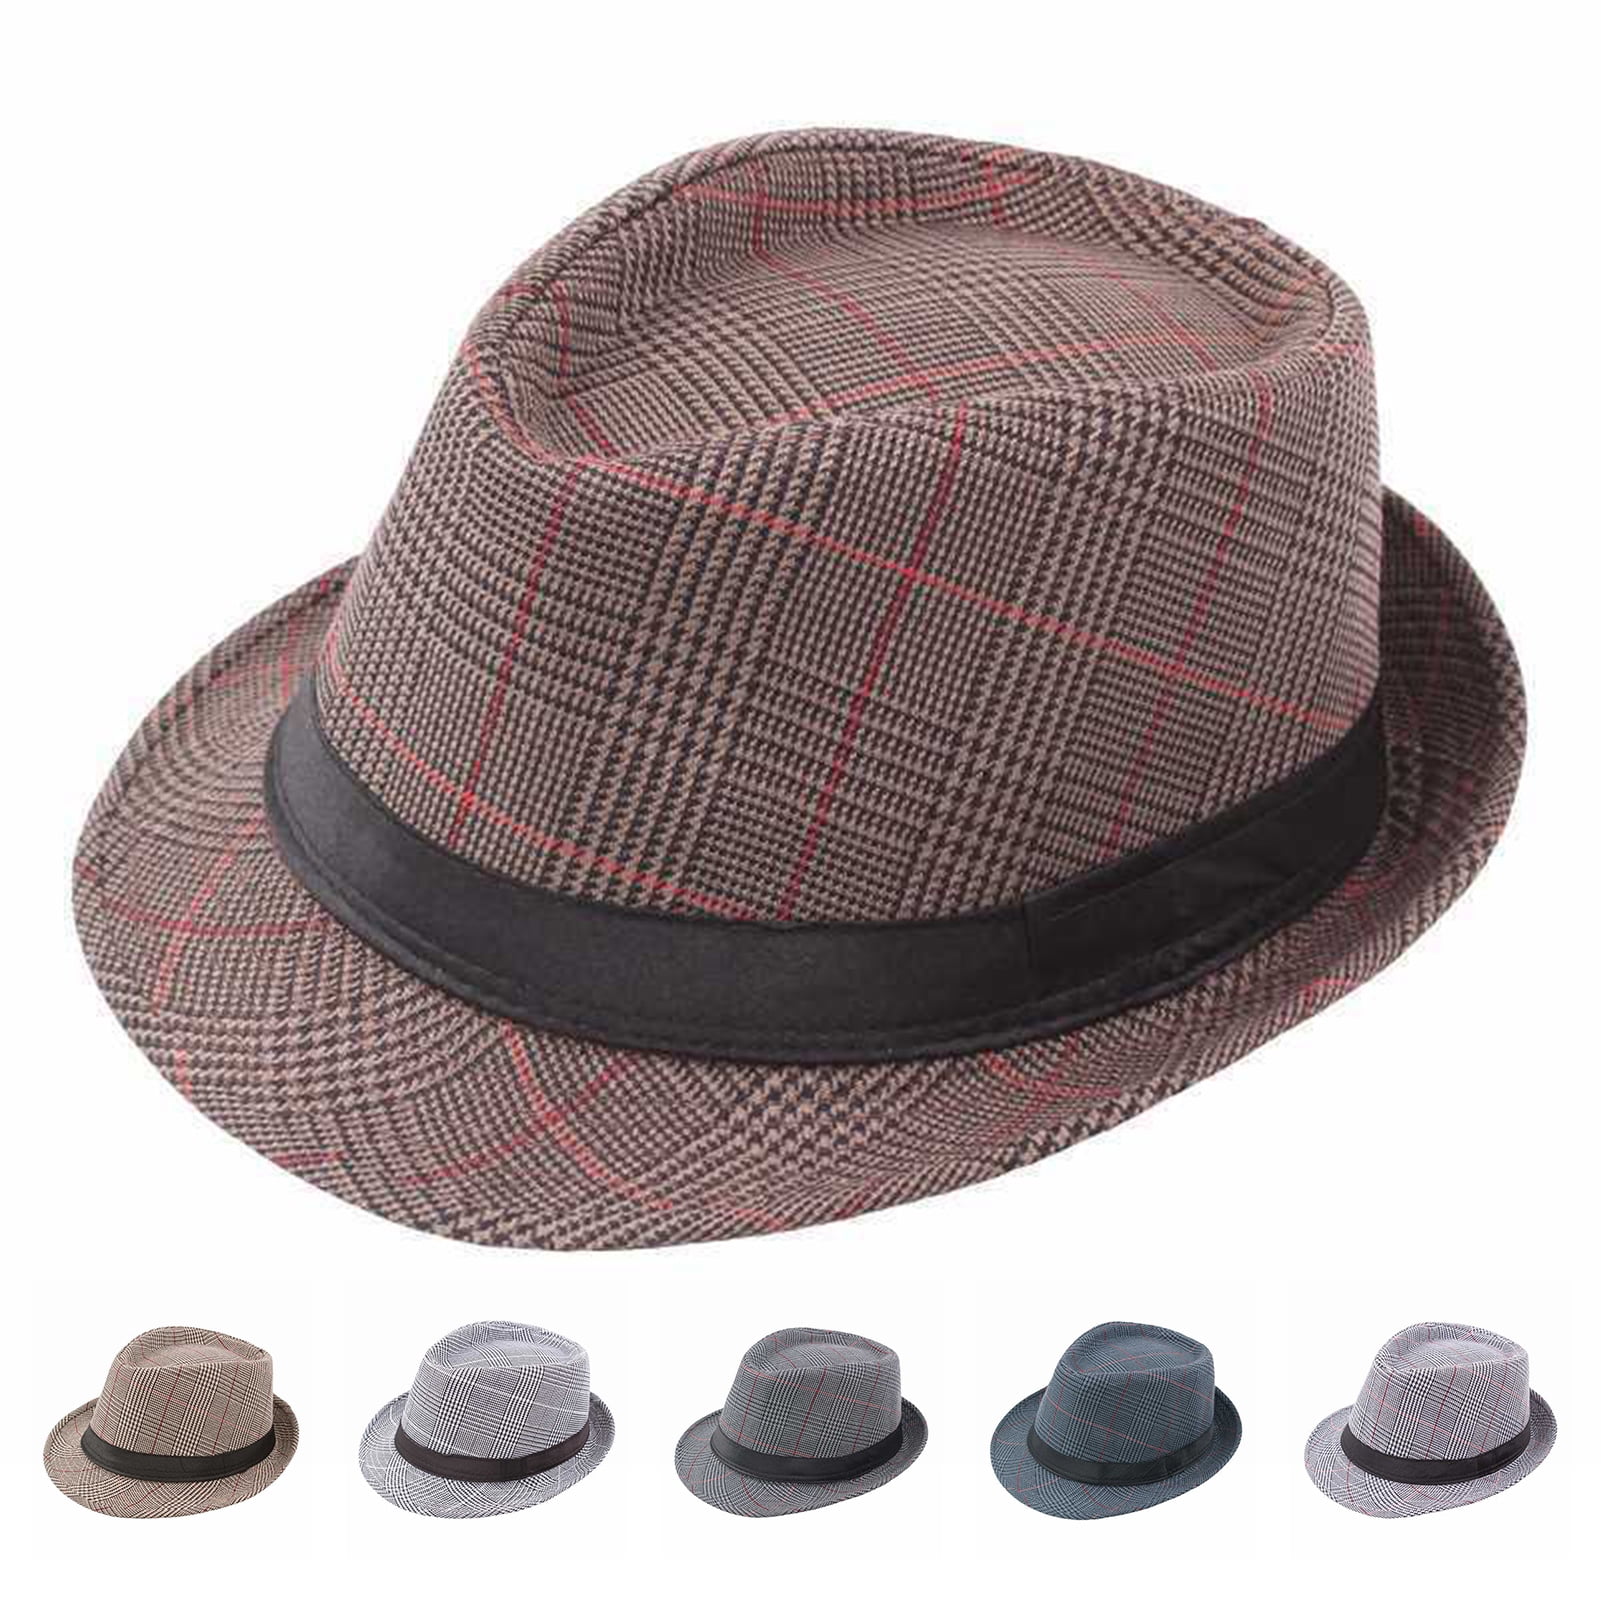 1 Pieces Newsboy Men's Hat Cotton Soft Stretch Fit Men Cap Cabbie Driving  Hat for Men 